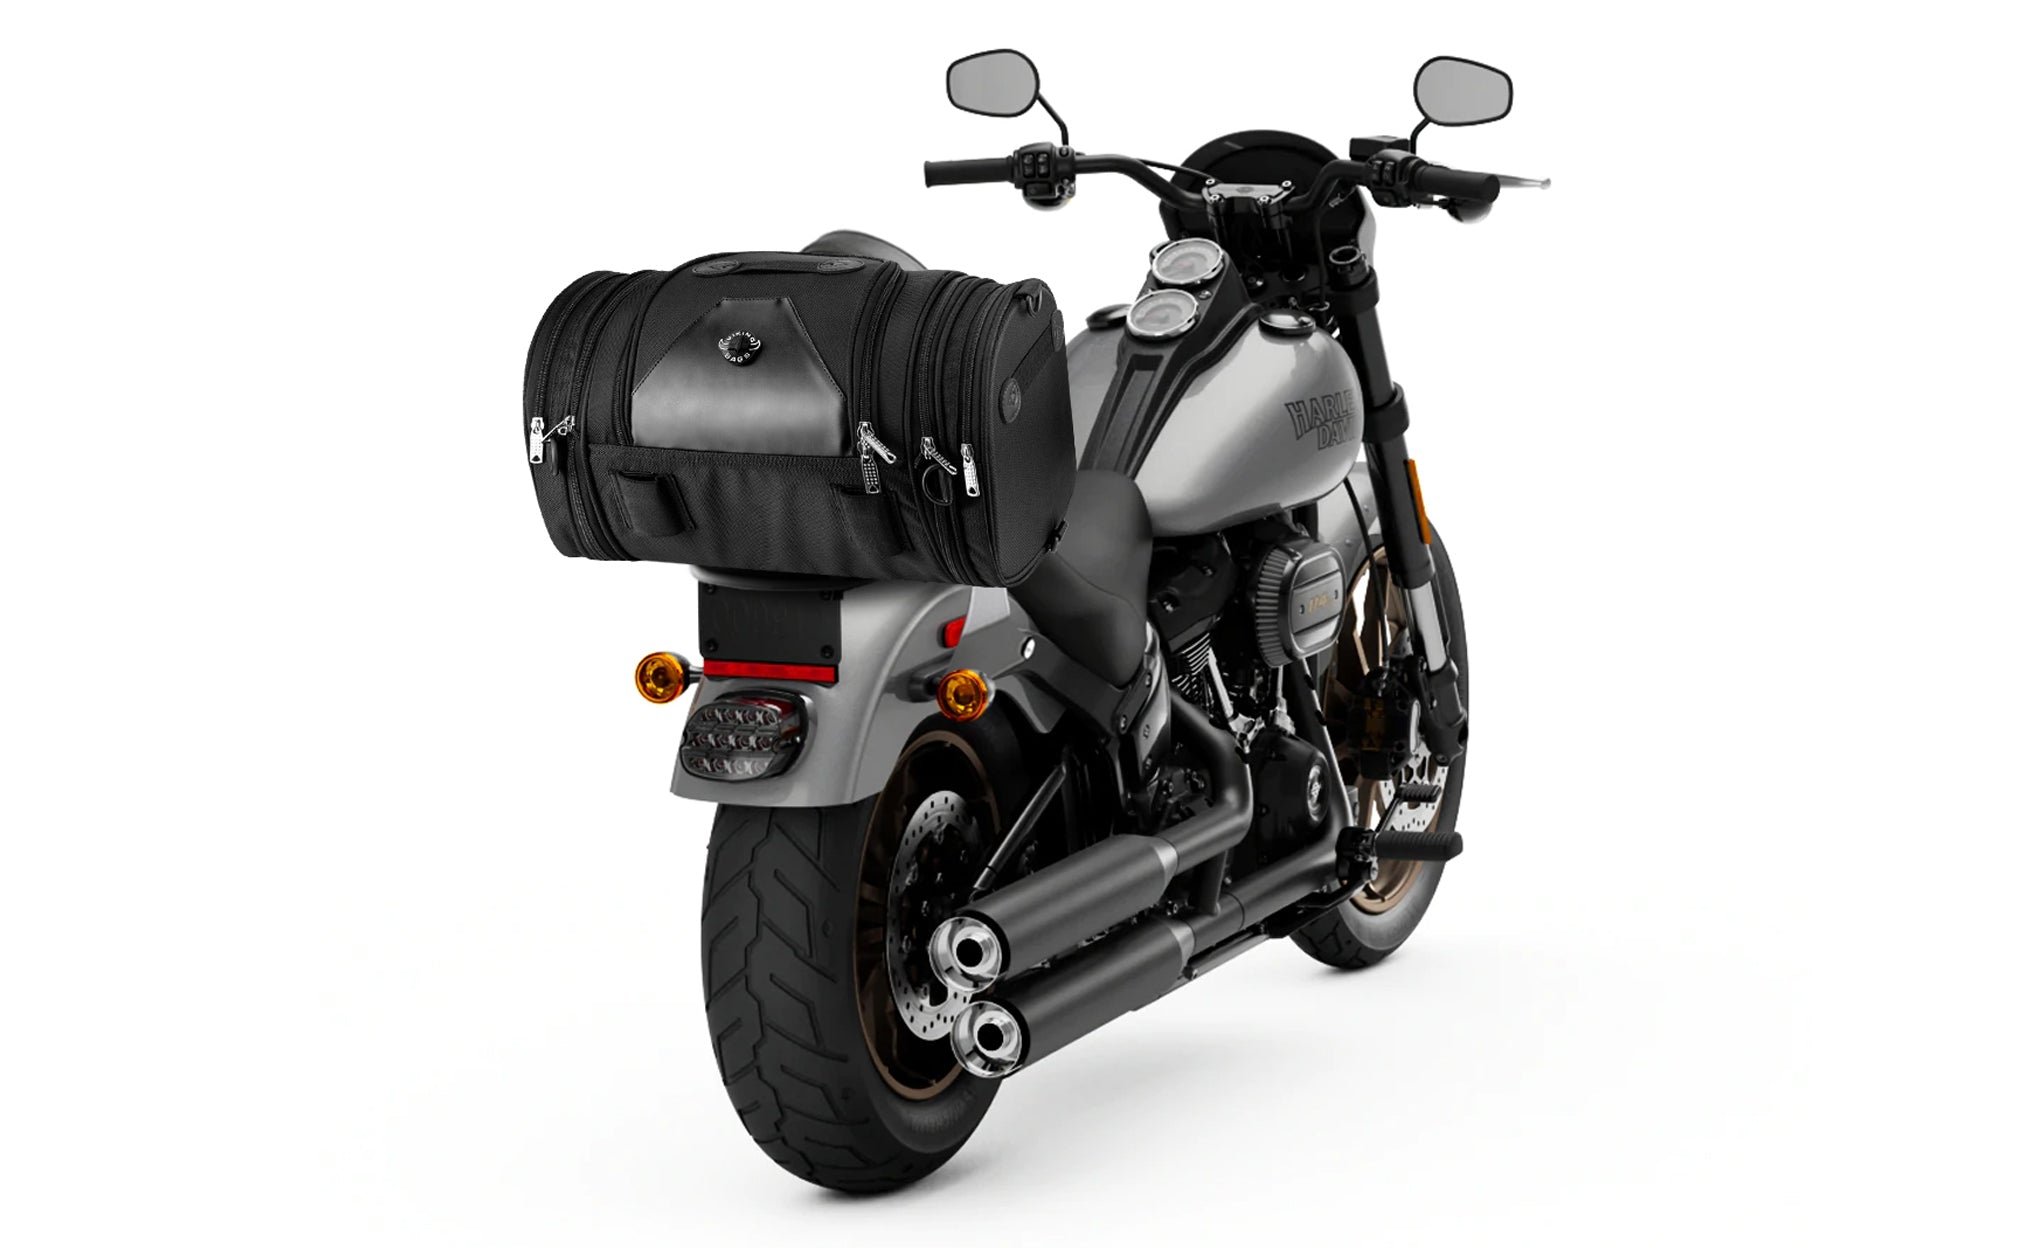 Viking Axwell Small Kawasaki Motorcycle Roll Bag Bag on Bike View @expand